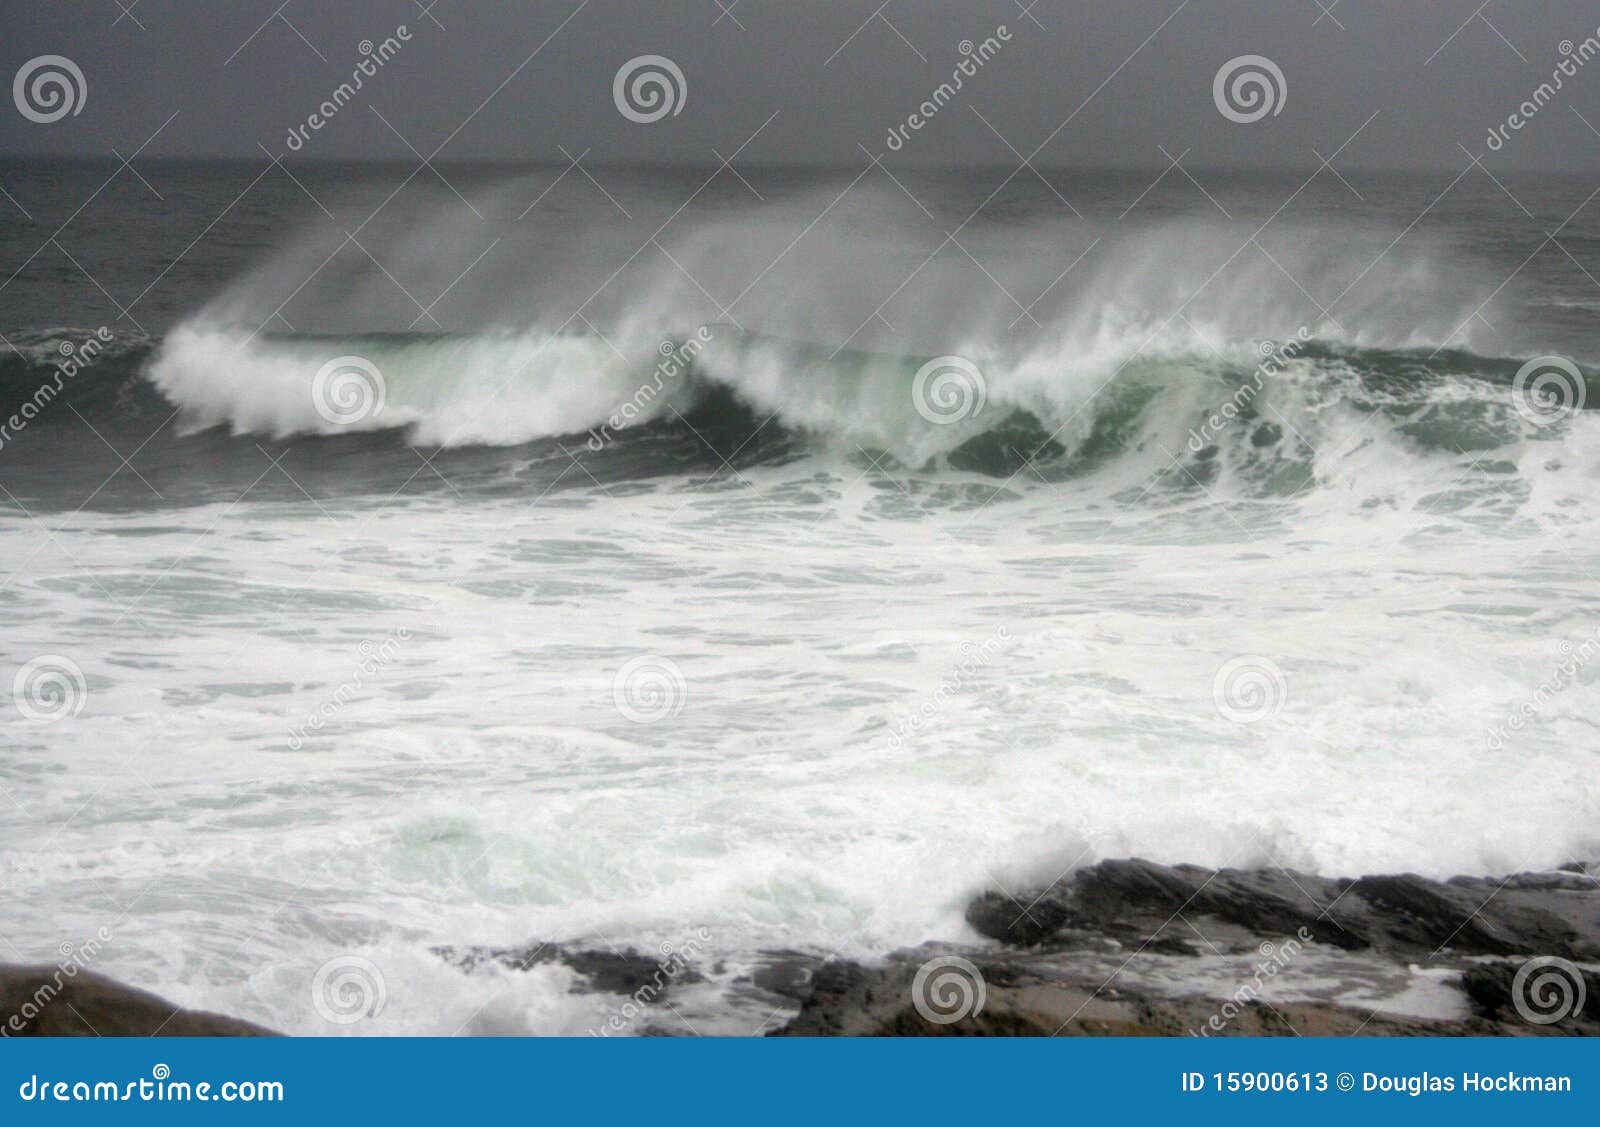 hurricane earl waves